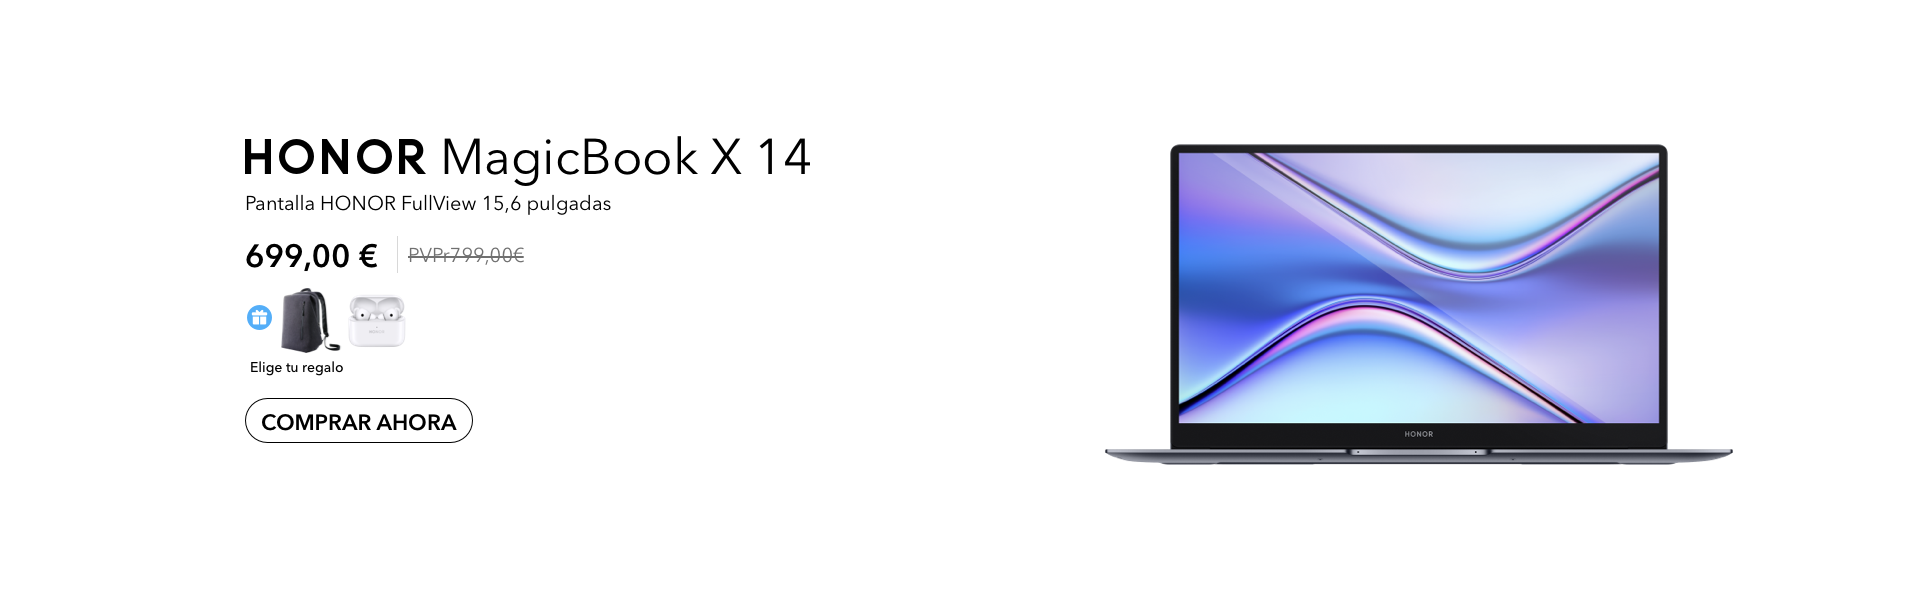 MagicBook X14